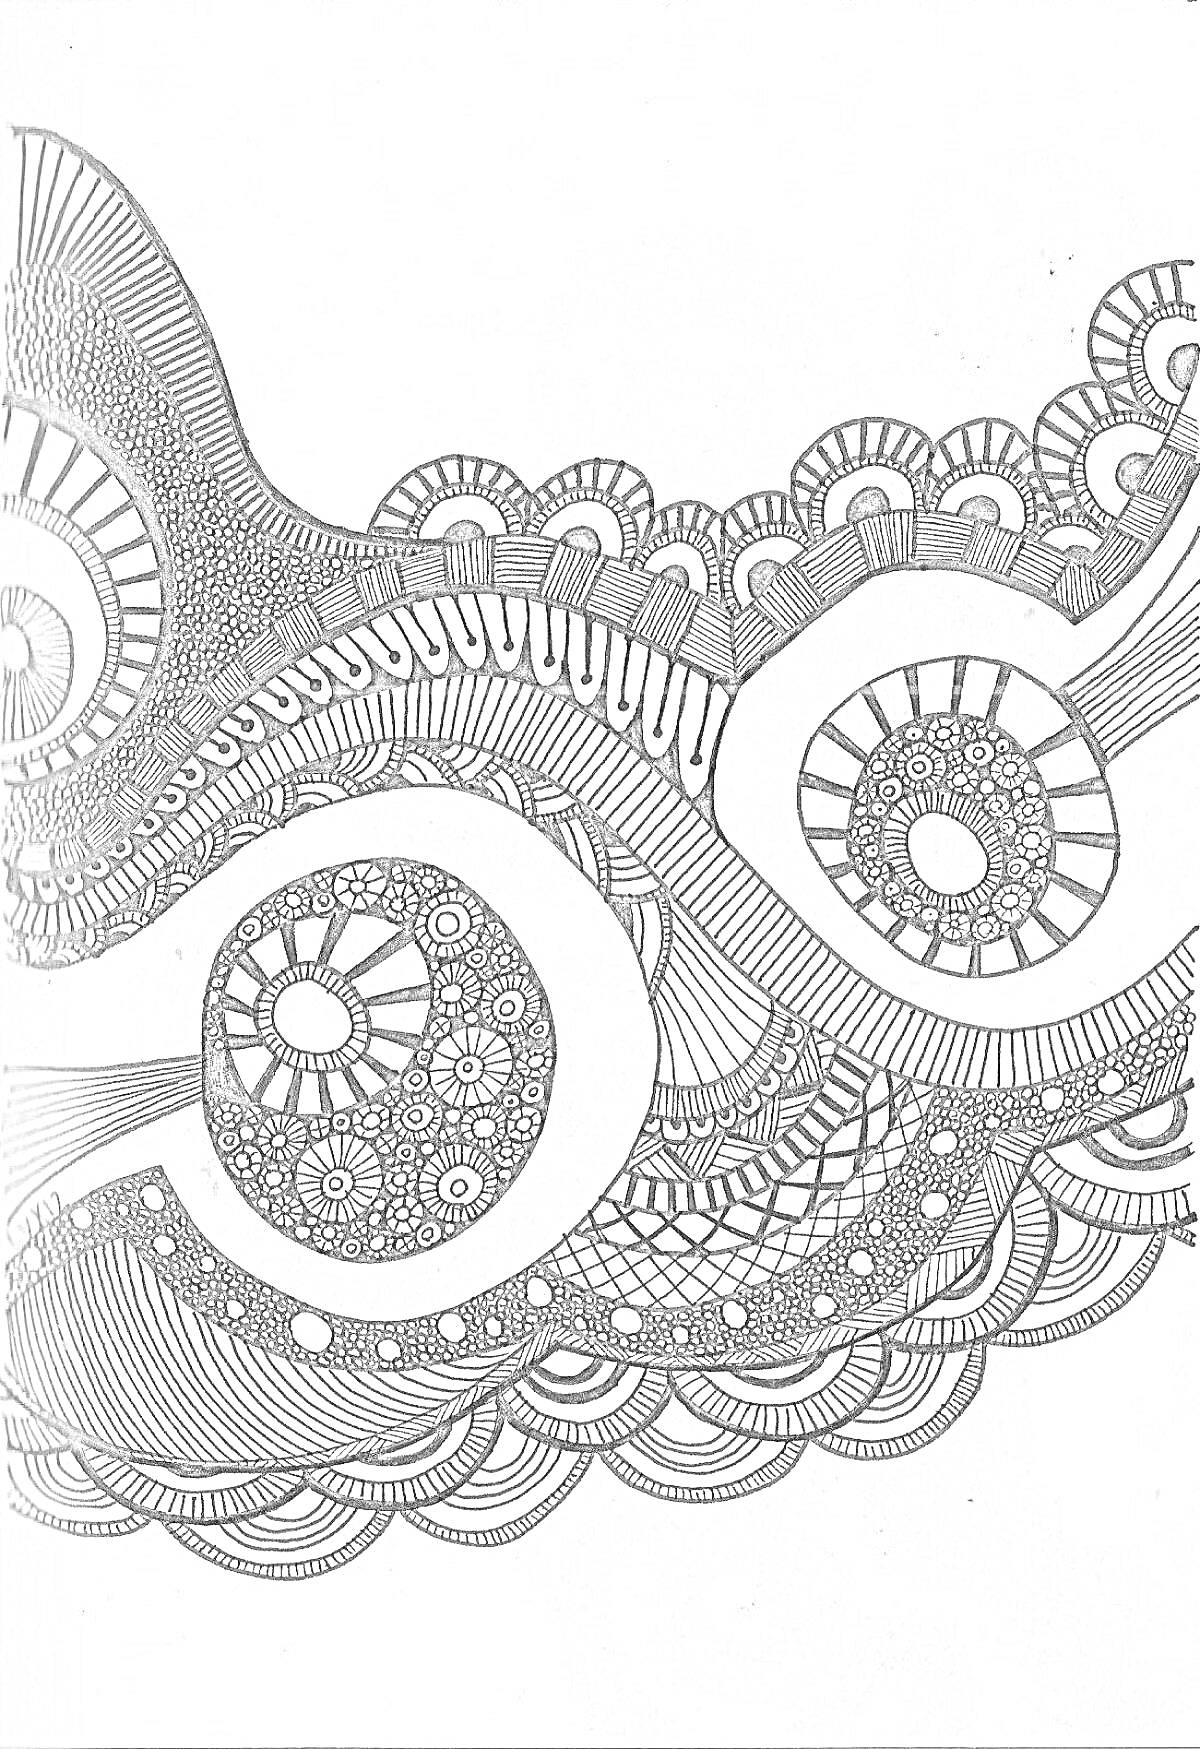 Раскраска Зентангл с круговыми и волнообразными узорами, состоящими из спиралей, линий, точек и дуг.